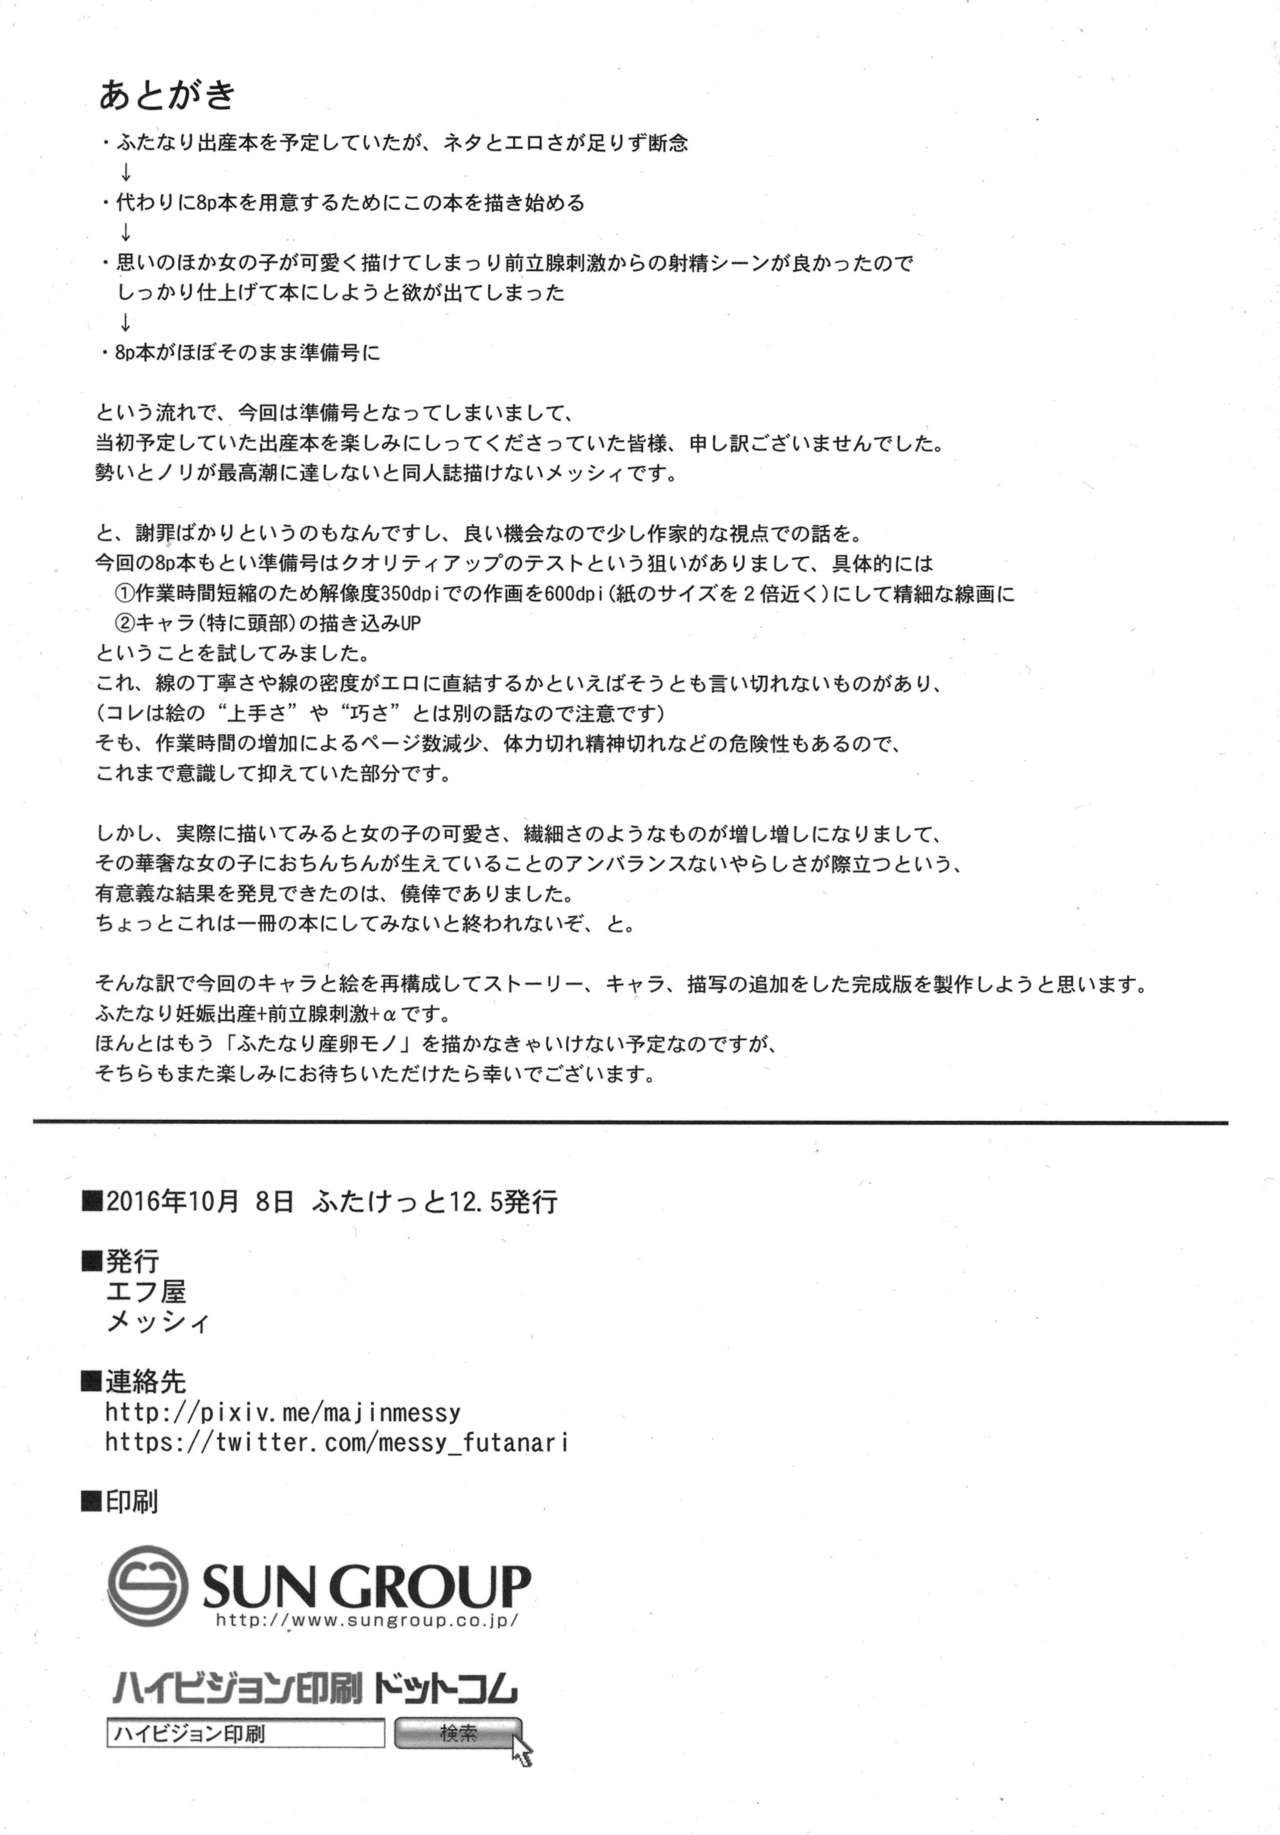 (ふたけっと12.5) [エフ屋 (メッシィ)] Futanariシリーズ新作準備号 制作メモ